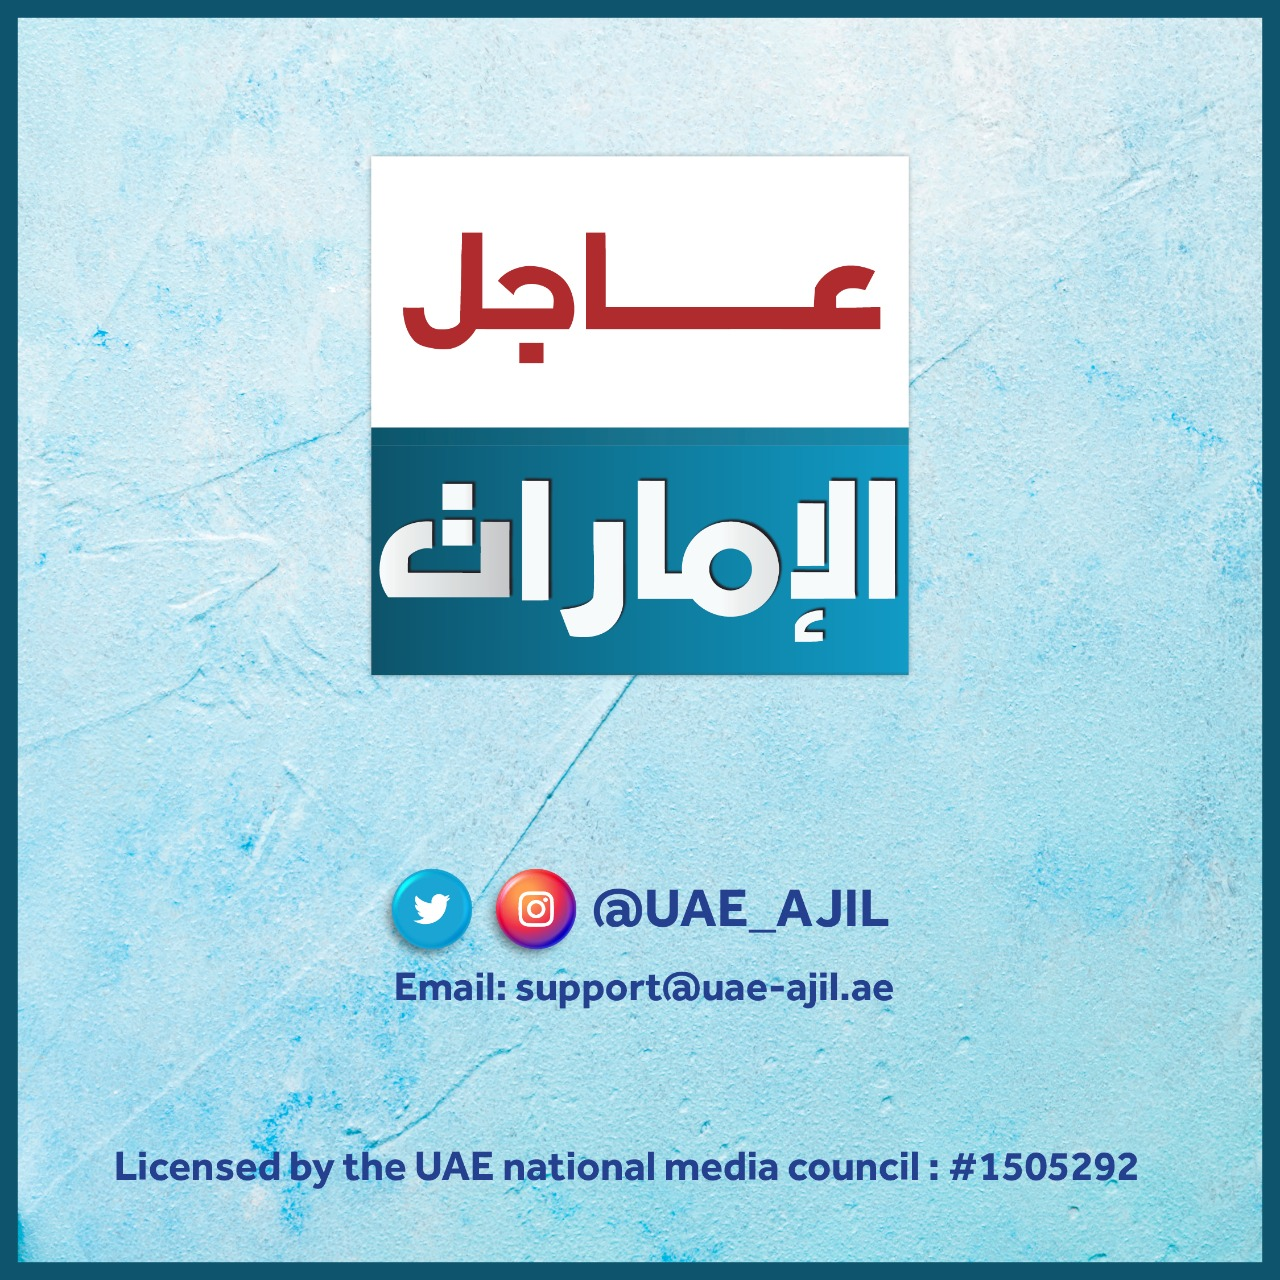 UAE AJIL Logo